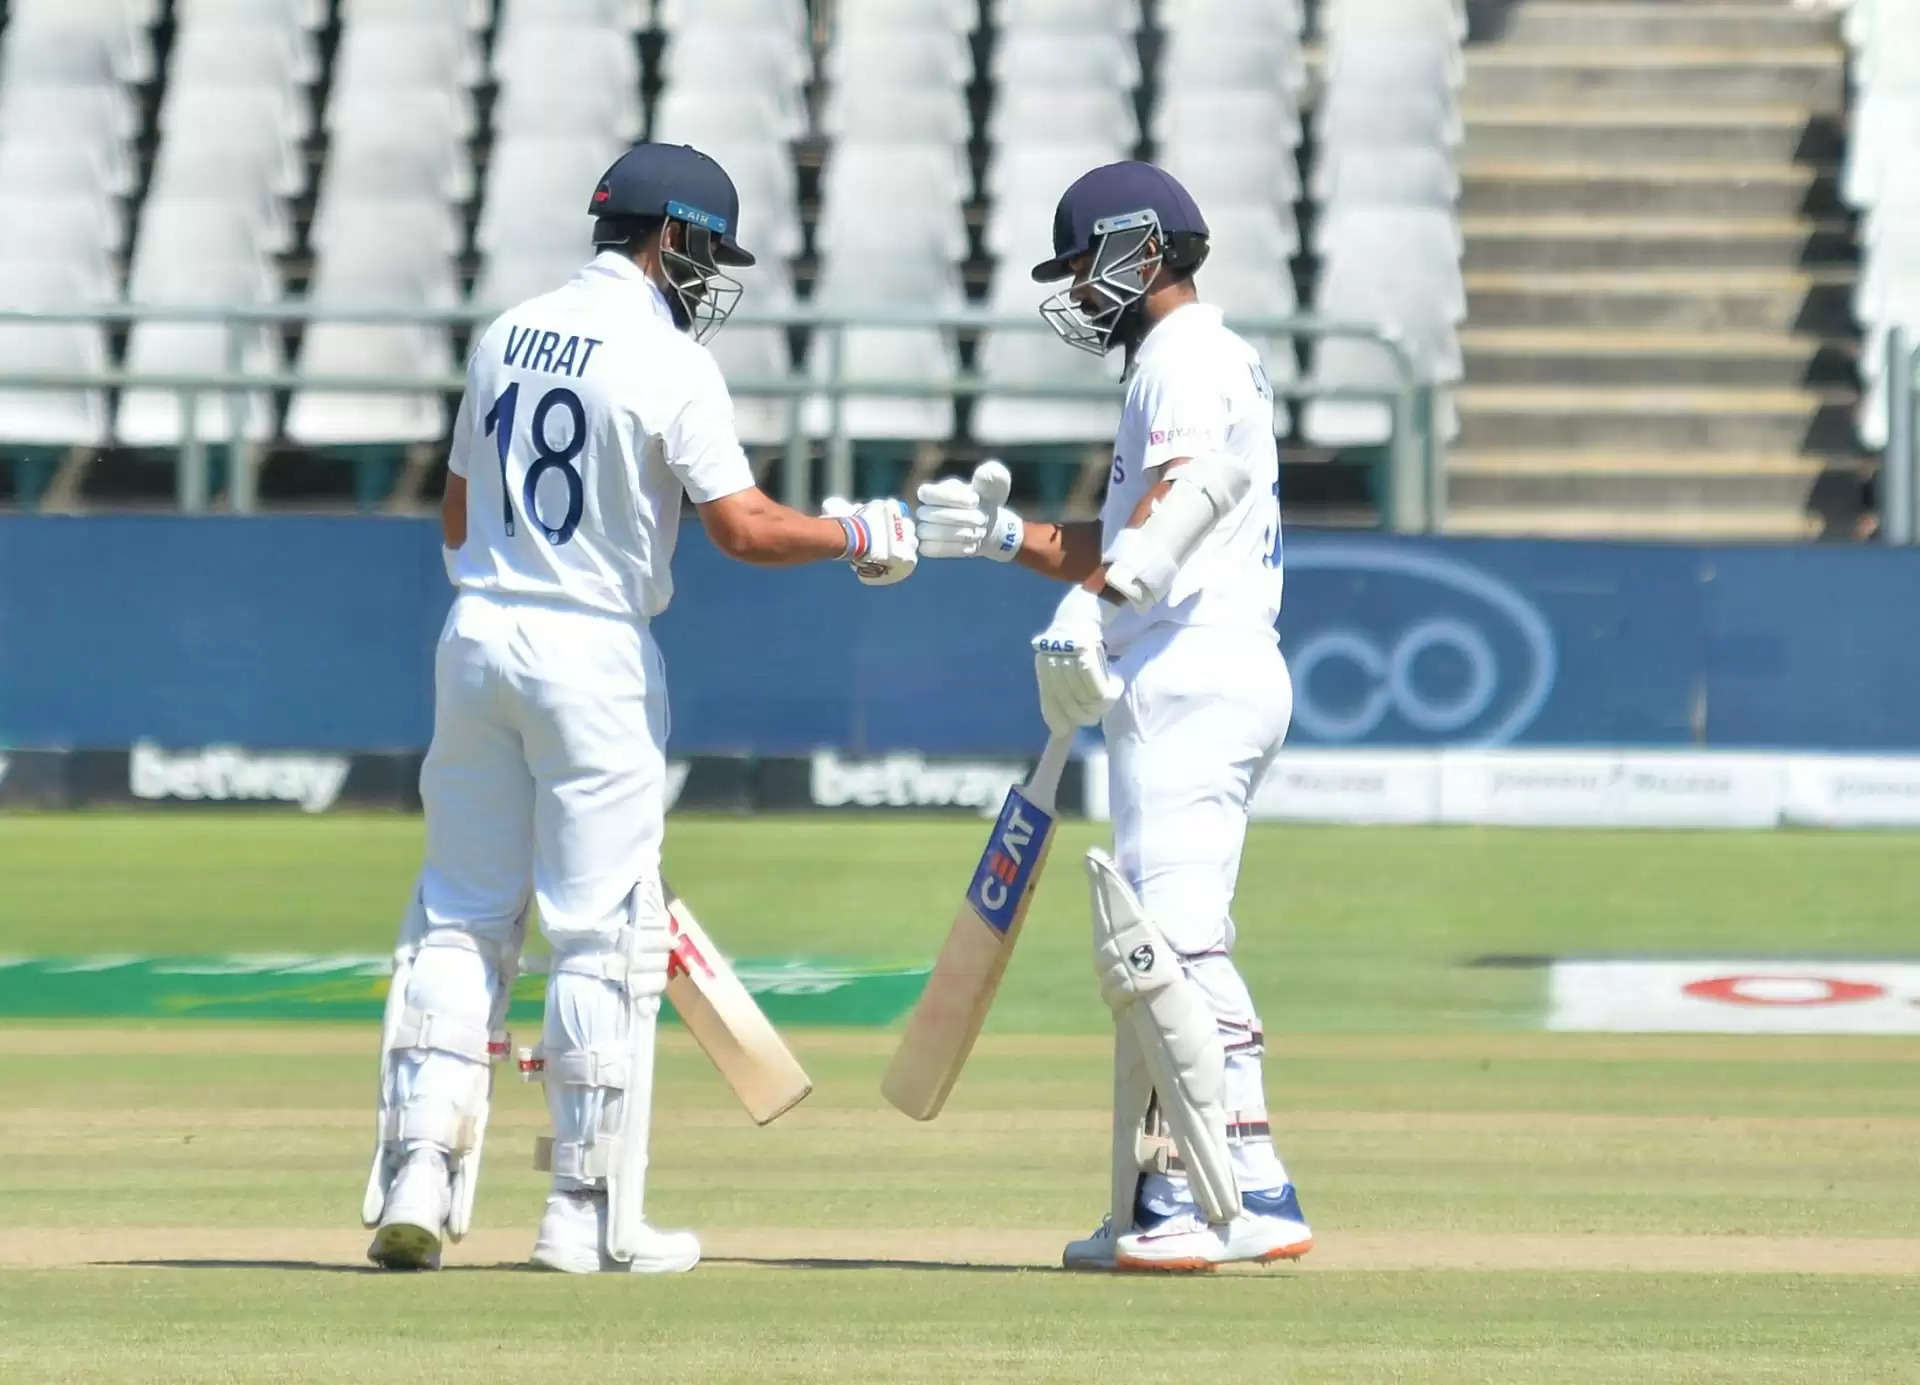 "सिर्फ 5 विशेषज्ञ बल्लेबाज, 3 की फॉर्म पर सवालिया निशान" - सलमान बट ने दक्षिण अफ्रीका में भारत की हार का कारण बताया